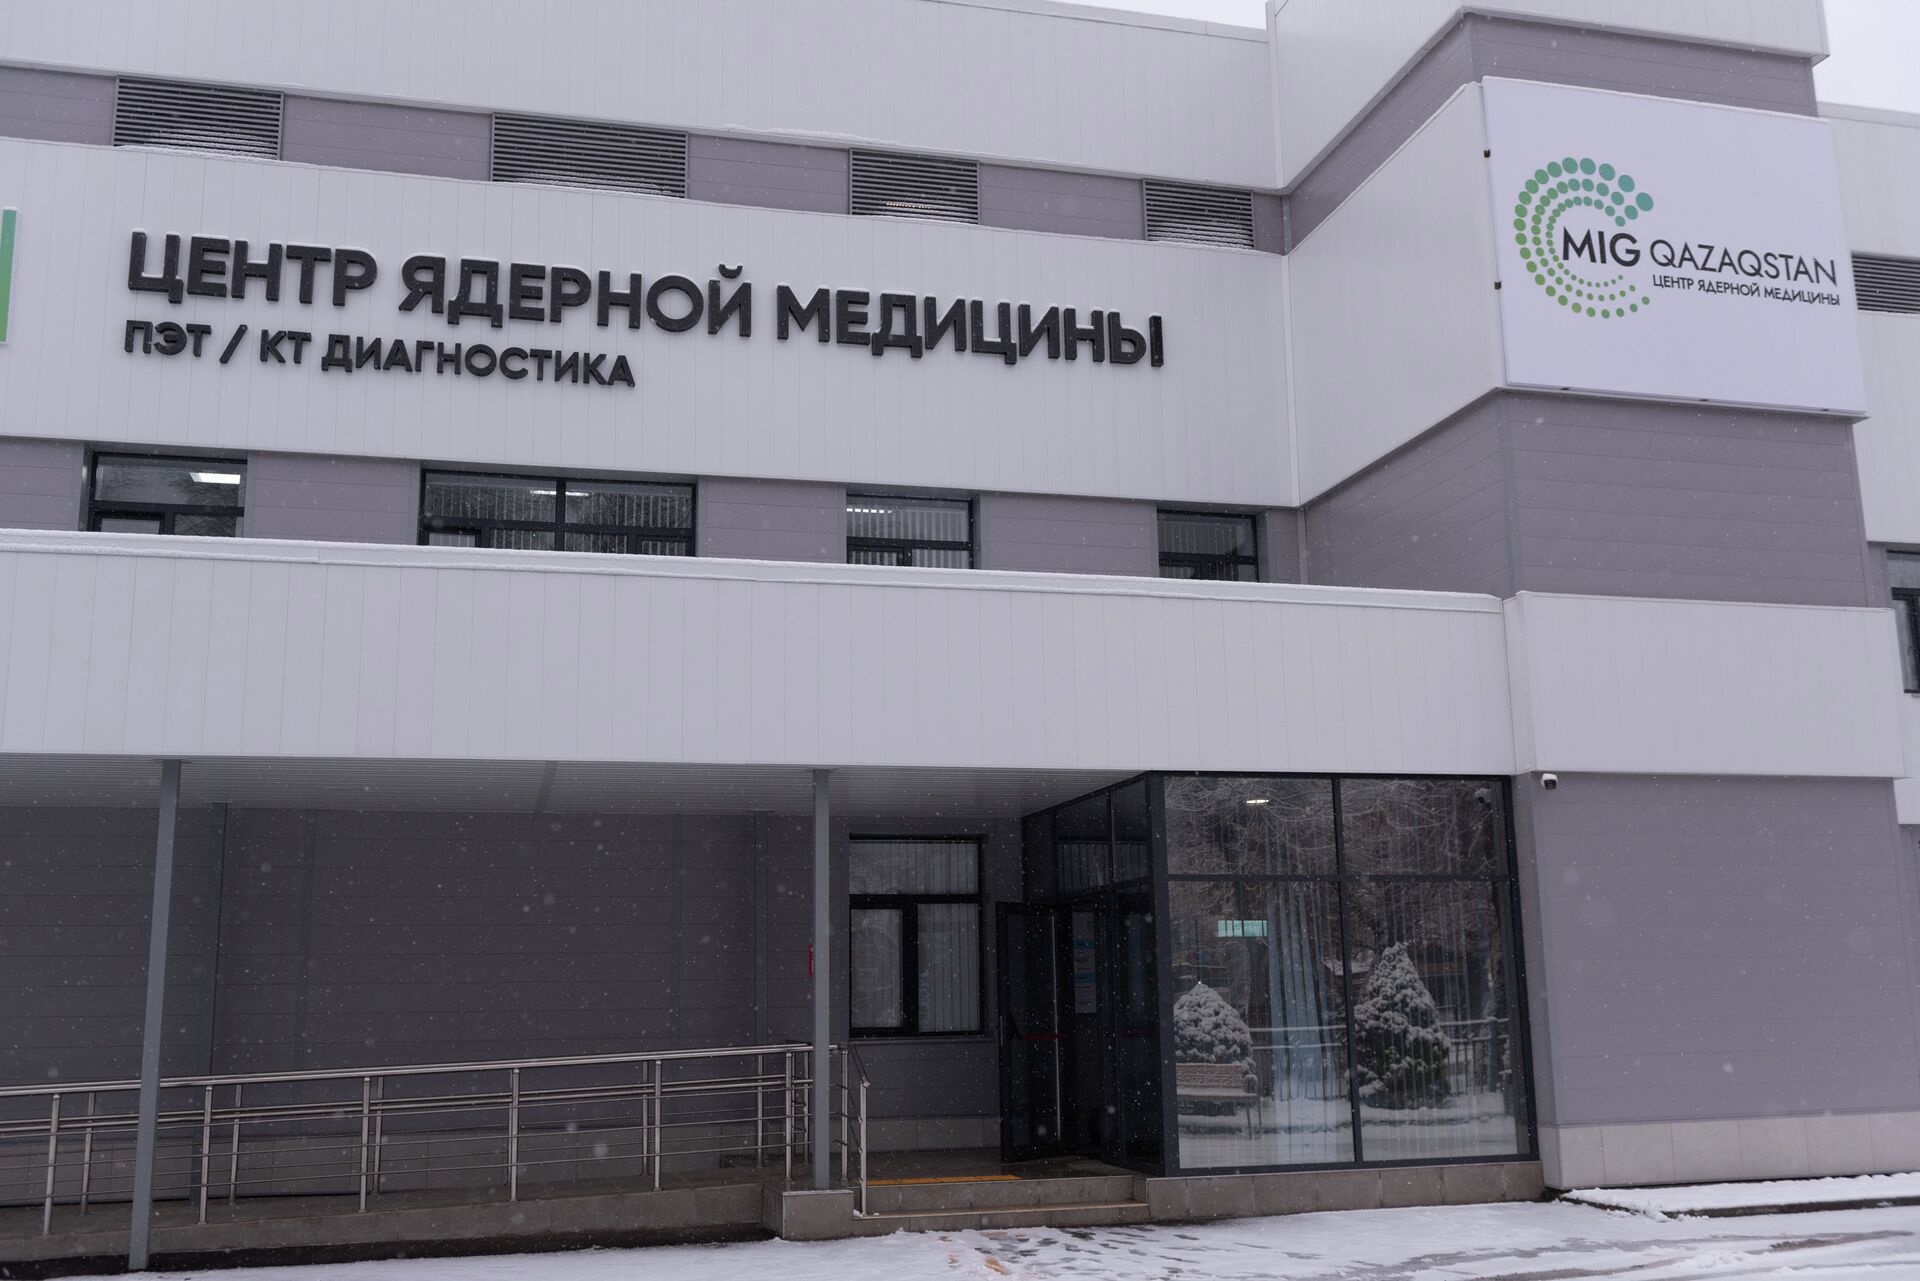 Центр ядерной медицины MIG Qazaqstan - Sputnik Казахстан, 1920, 01.02.2022